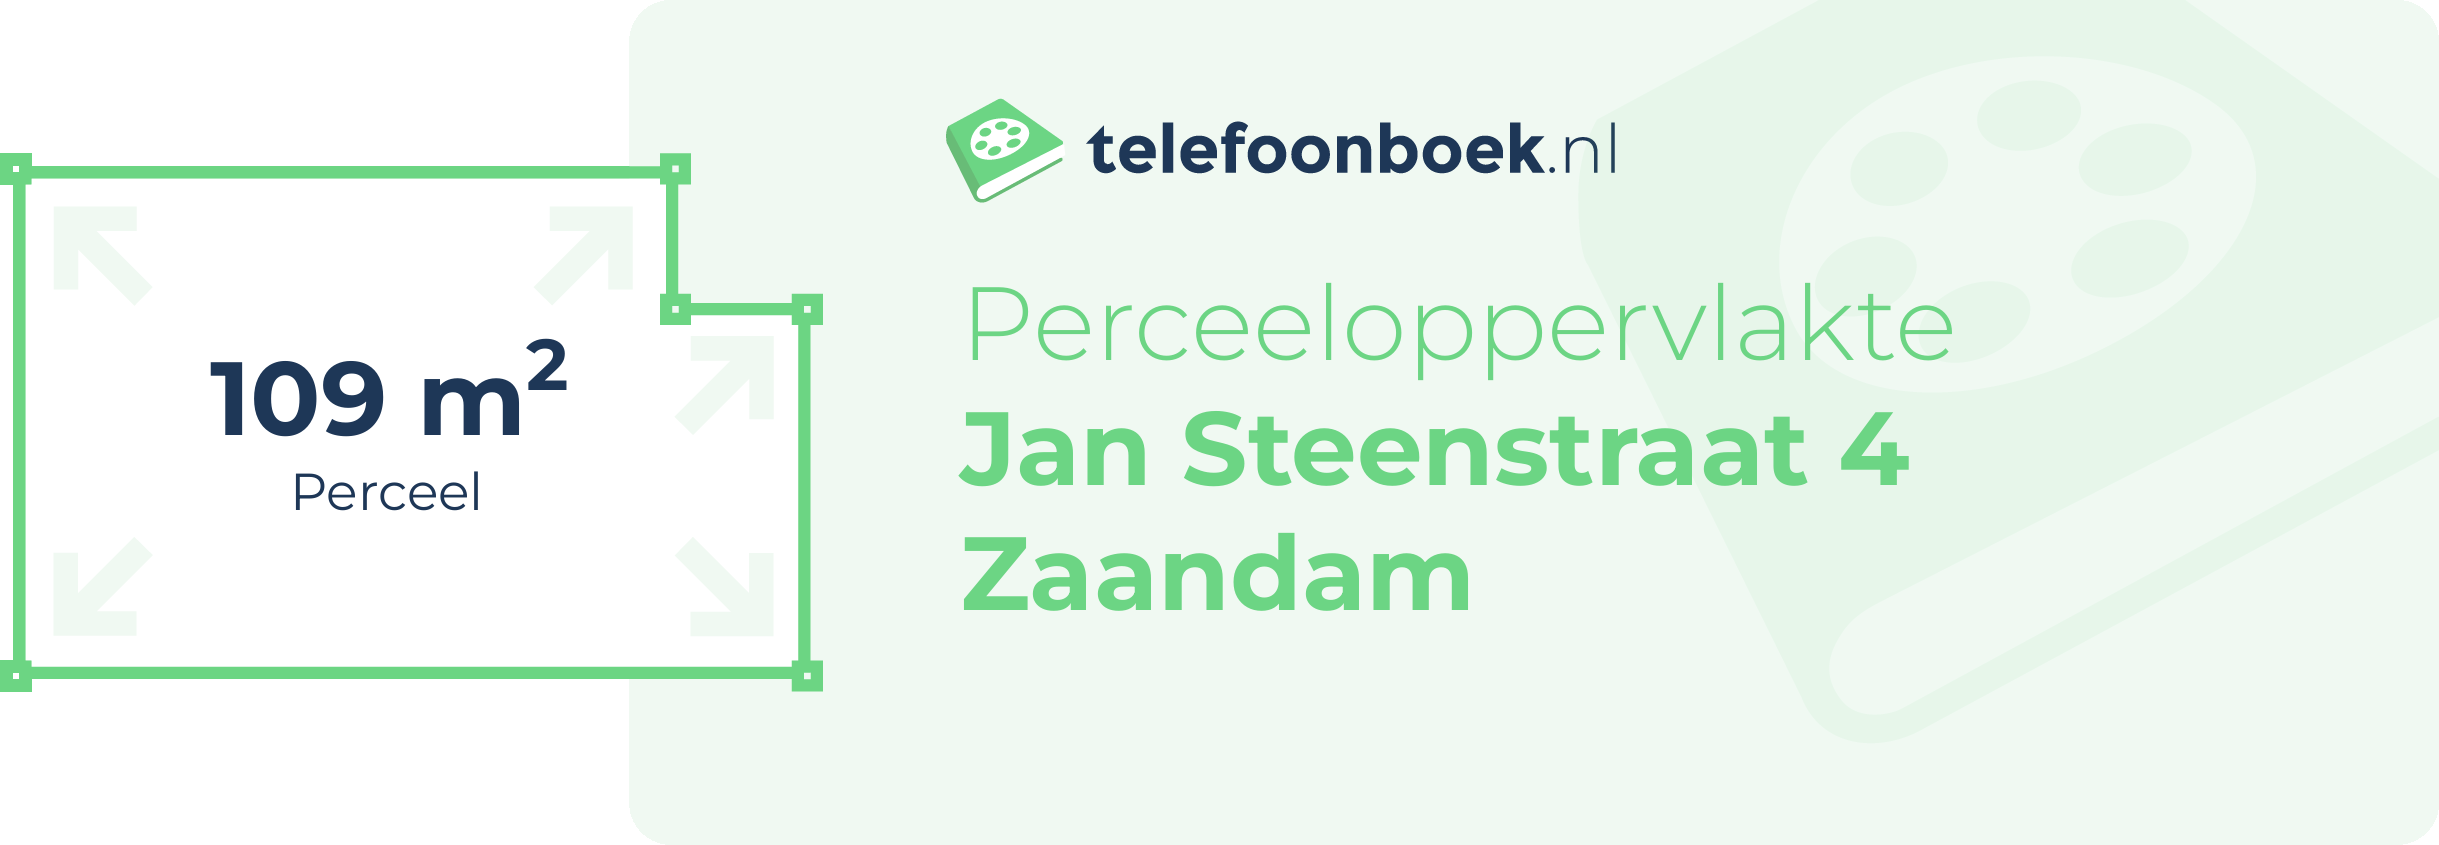 Perceeloppervlakte Jan Steenstraat 4 Zaandam